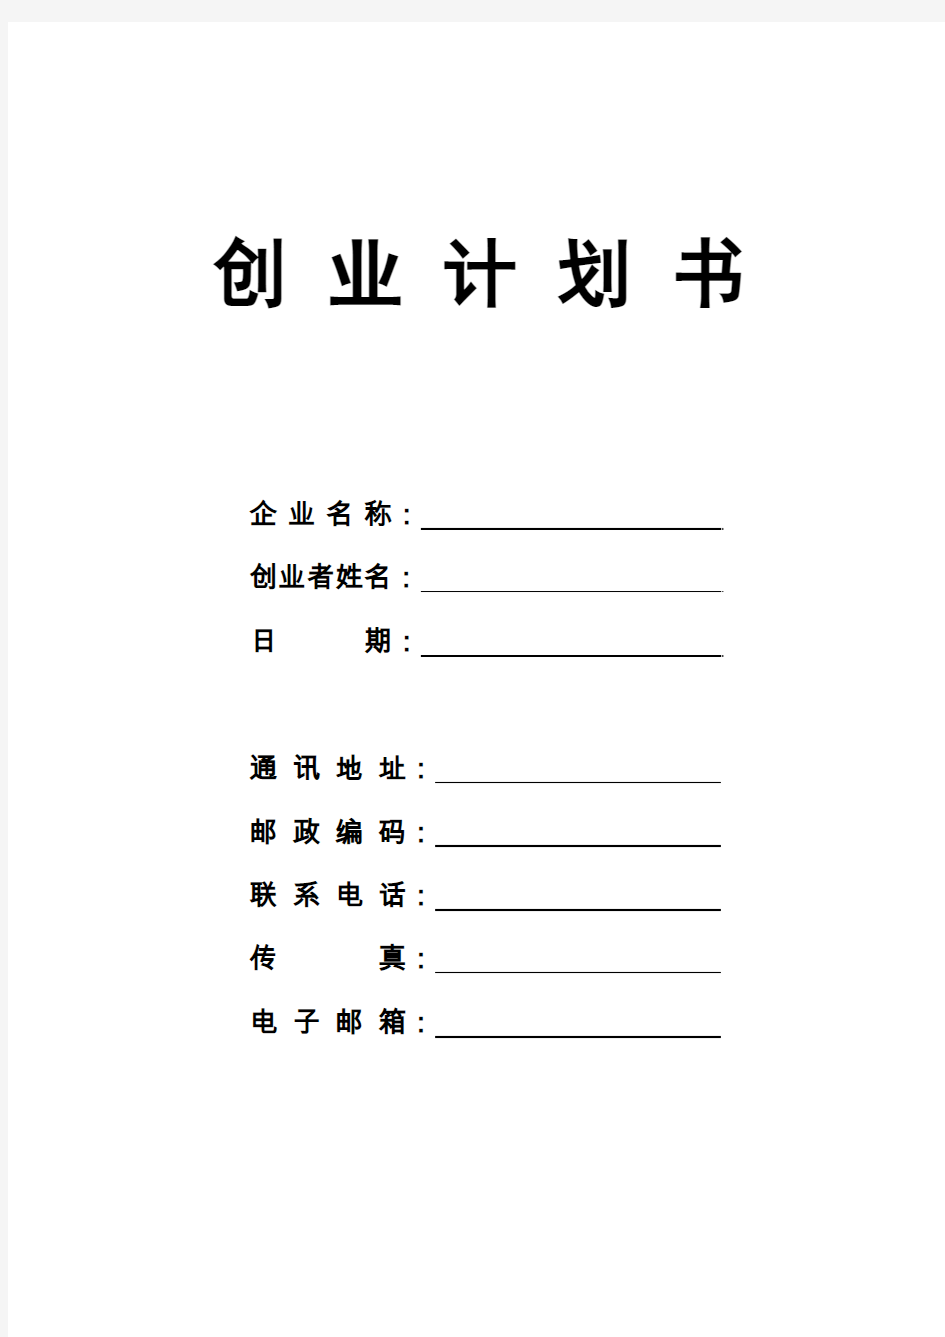 SIYB创业计划书空白模板(可直接打印) 2015-5-14